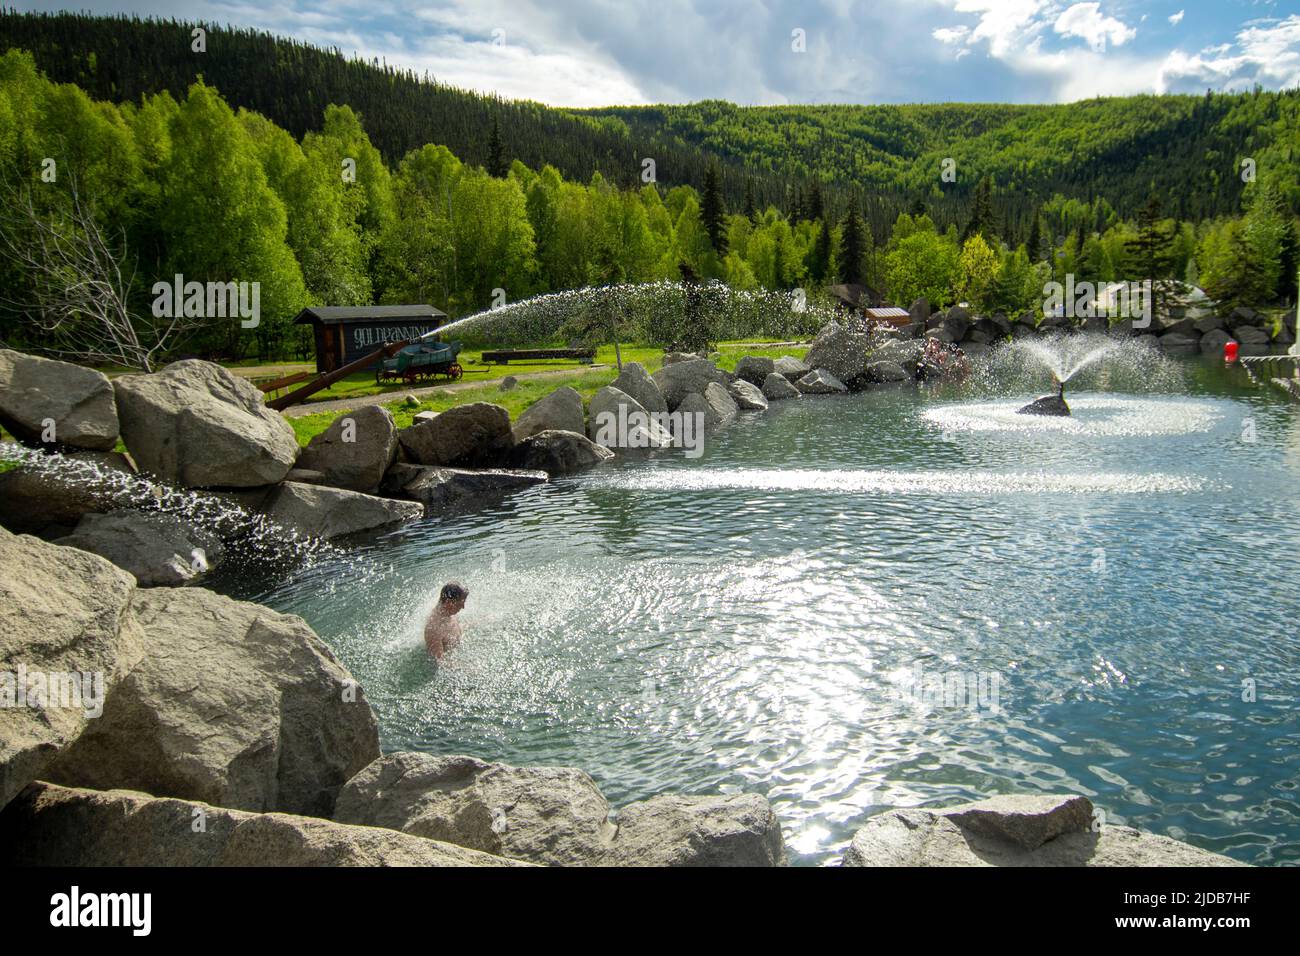 Gli ospiti apprezzano la piscina artificiale di Chena Hot Springs, fuori Fairbanks, Alaska; Chena Hot Springs, Alaska, Stati Uniti d'America Foto Stock